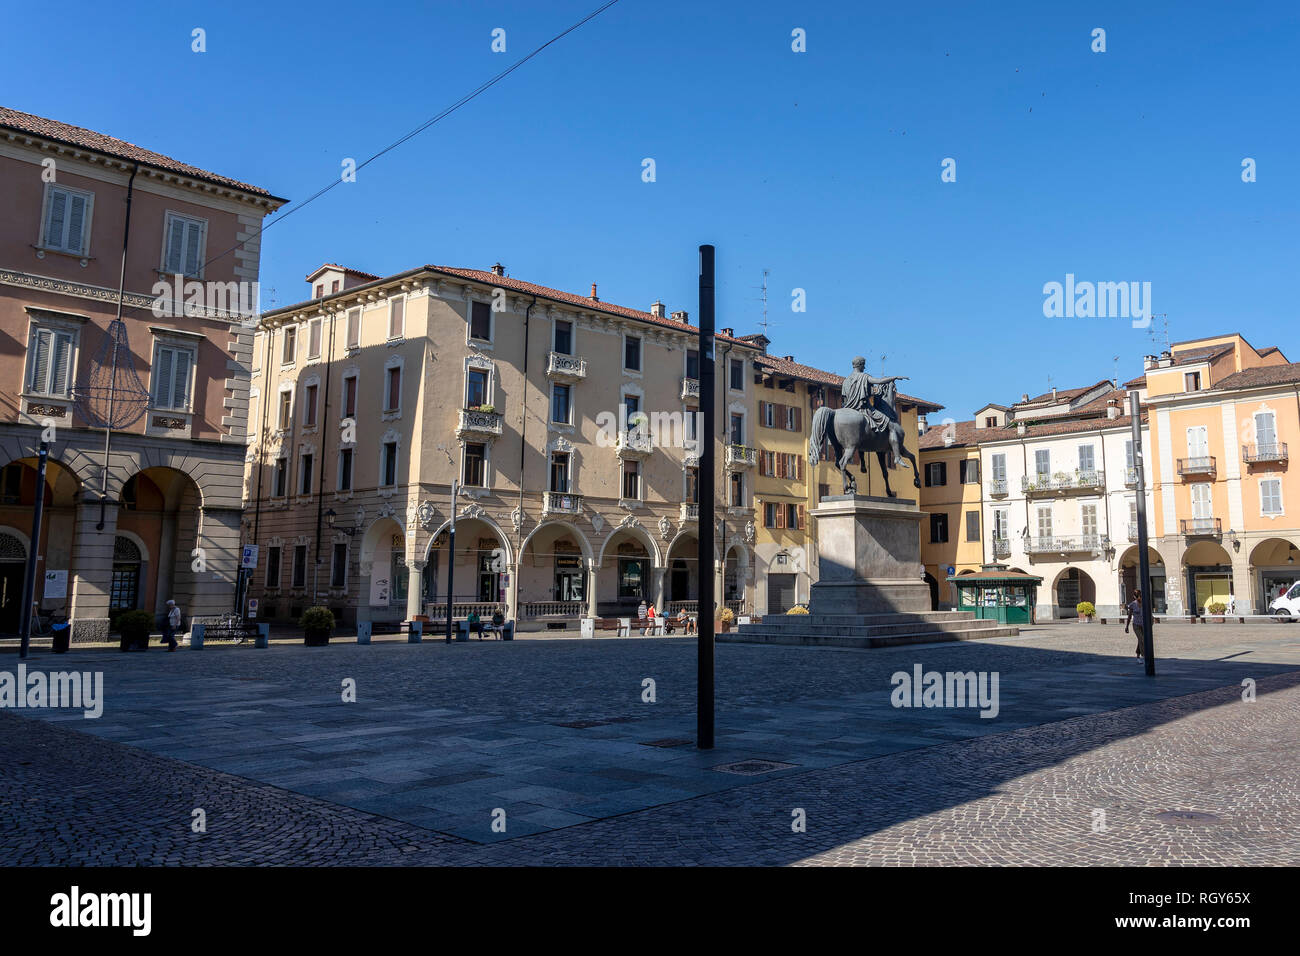 Casale Monferrato, Alessandria, Piedmont, Italy: the square known as Piazza Giuseppe Mazzini Stock Photo